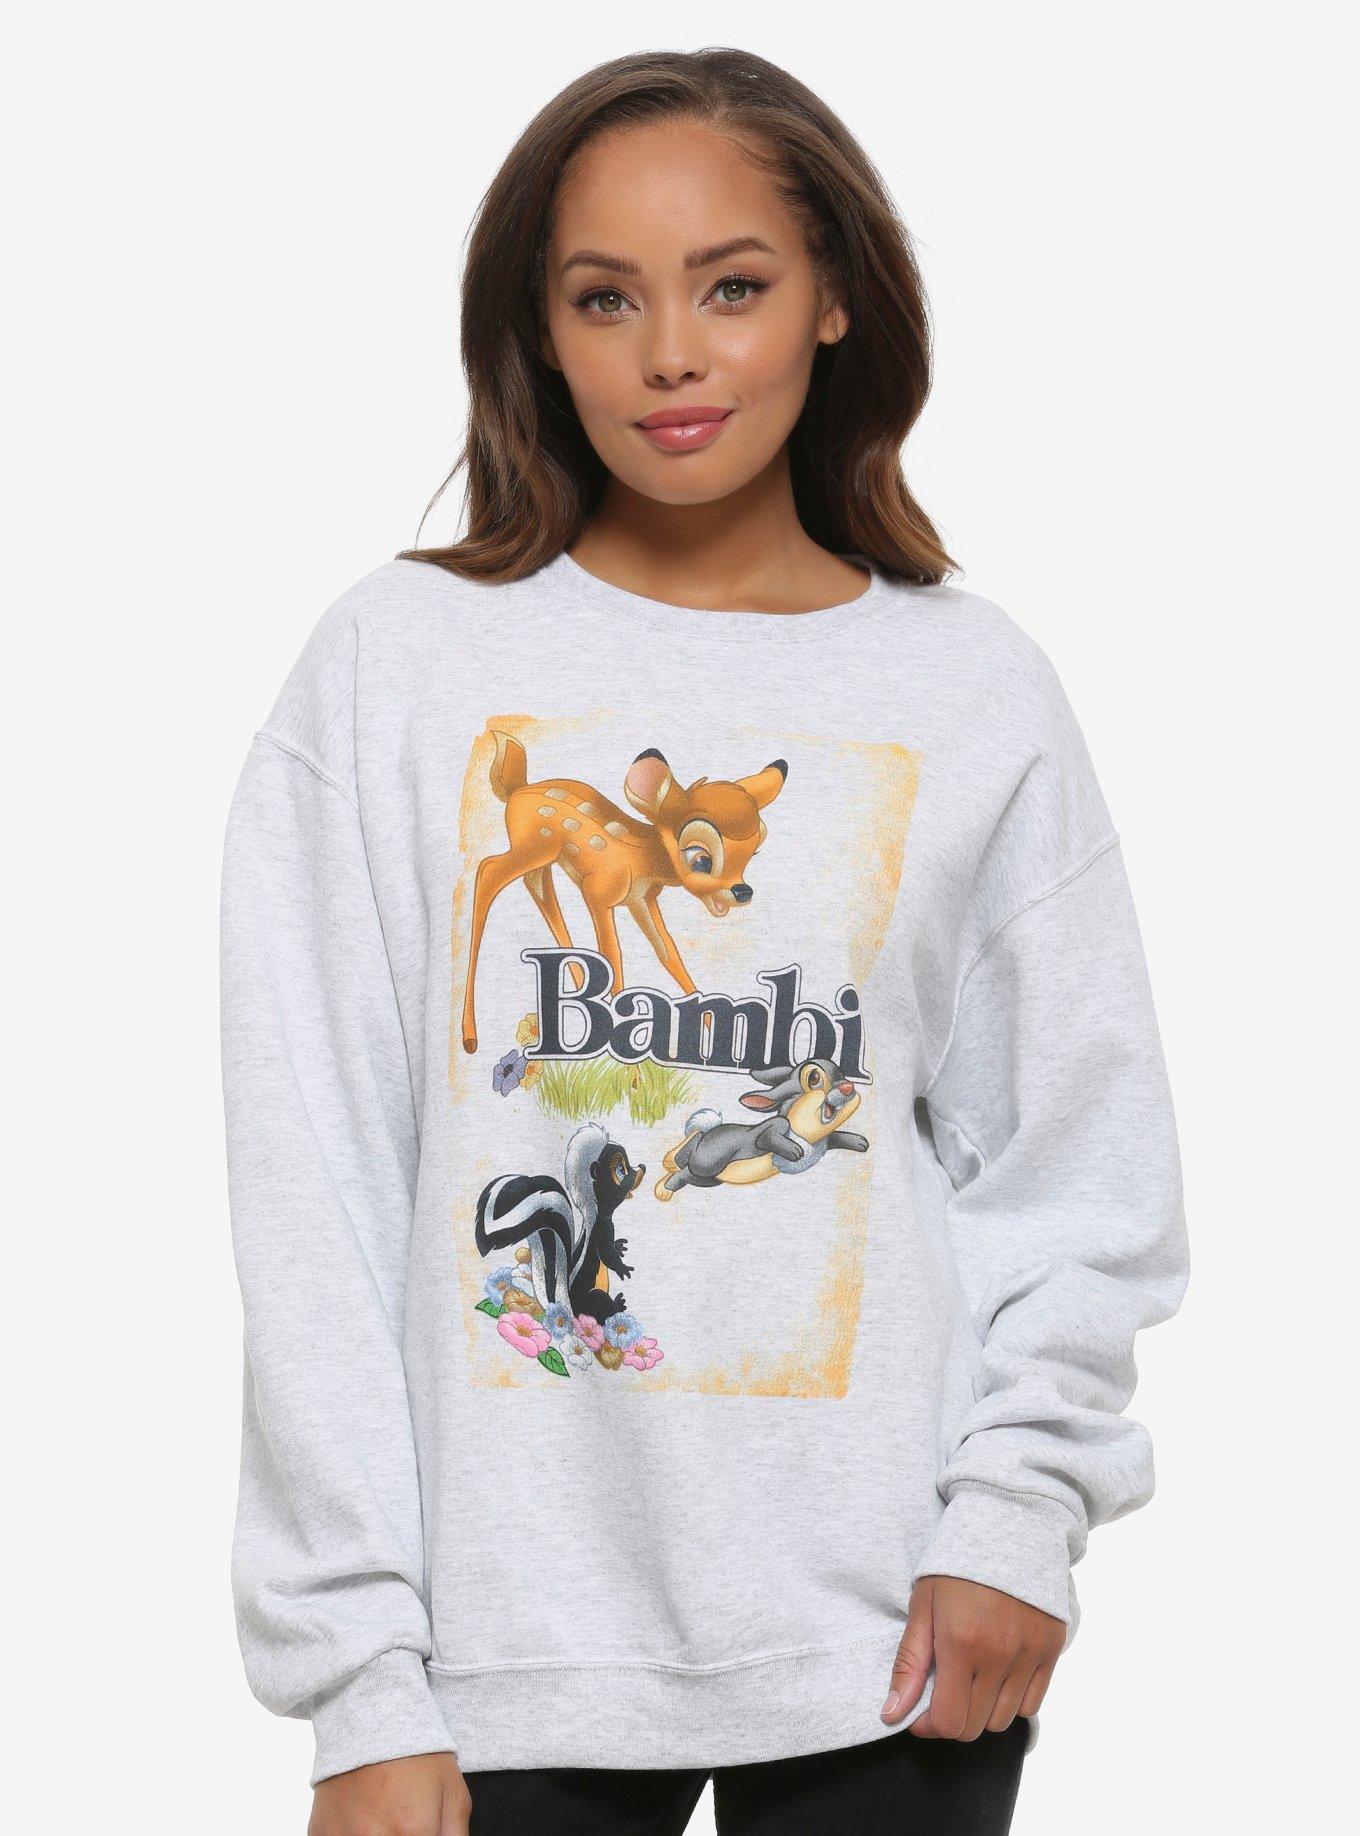 Disney Bambi Vintage Poster Women's Sweatshirt, MULTI, hi-res